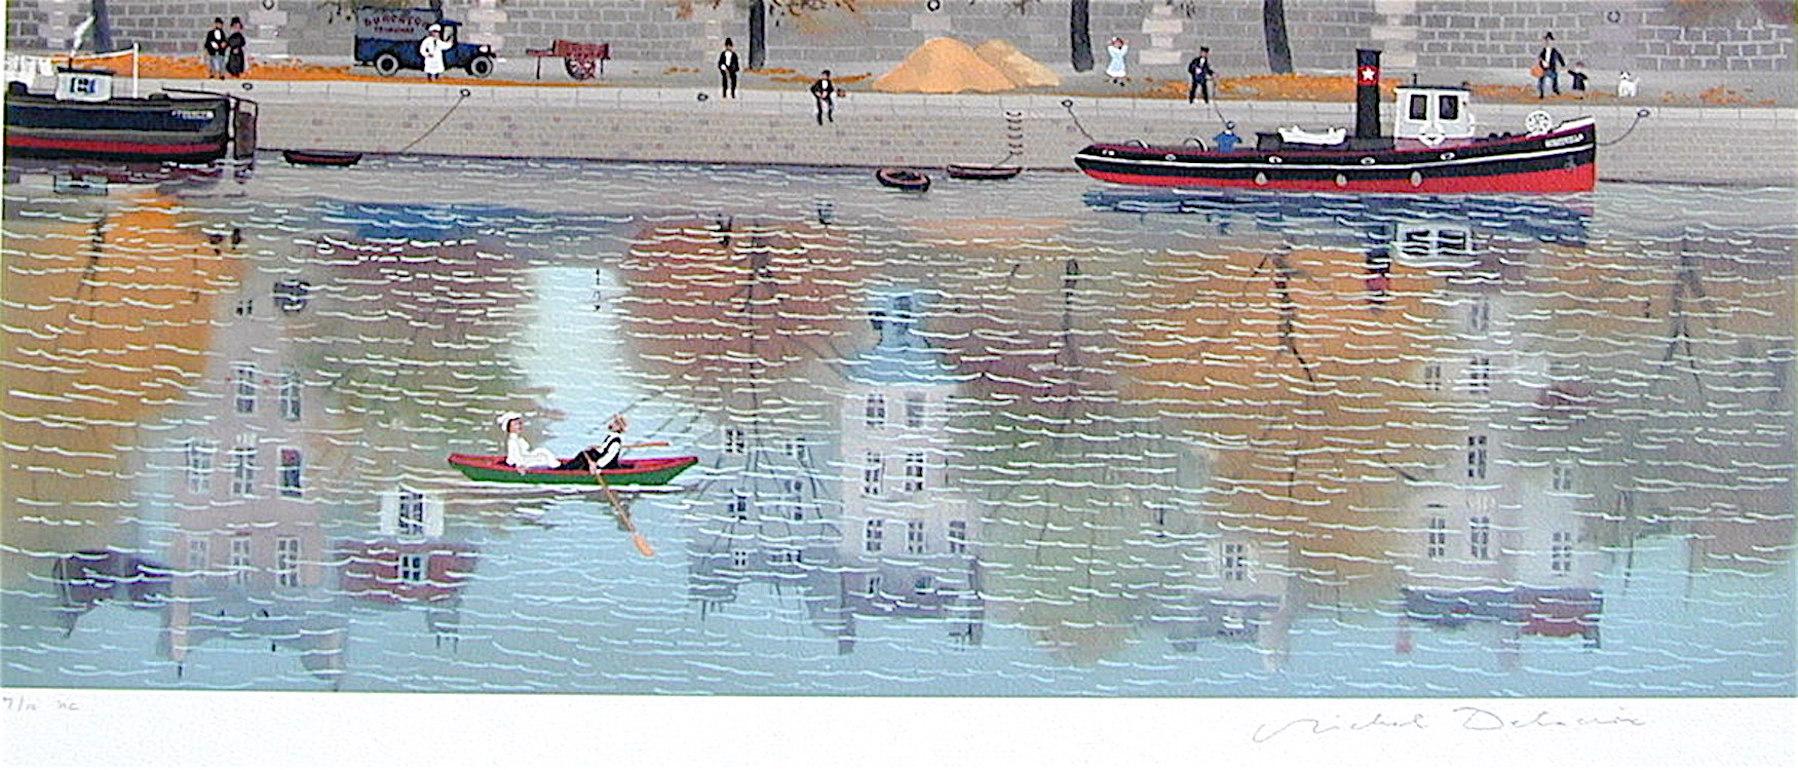 LE CANOTIER(Dernier beaux jours d'ete) THE BOATER(die letzten schönen Tage des Sommers) ist eine handgezeichnete Original-Lithografie in limitierter Auflage (keine Fotoreproduktion oder ein Digitaldruck) des bekannten französischen Künstlers Michel